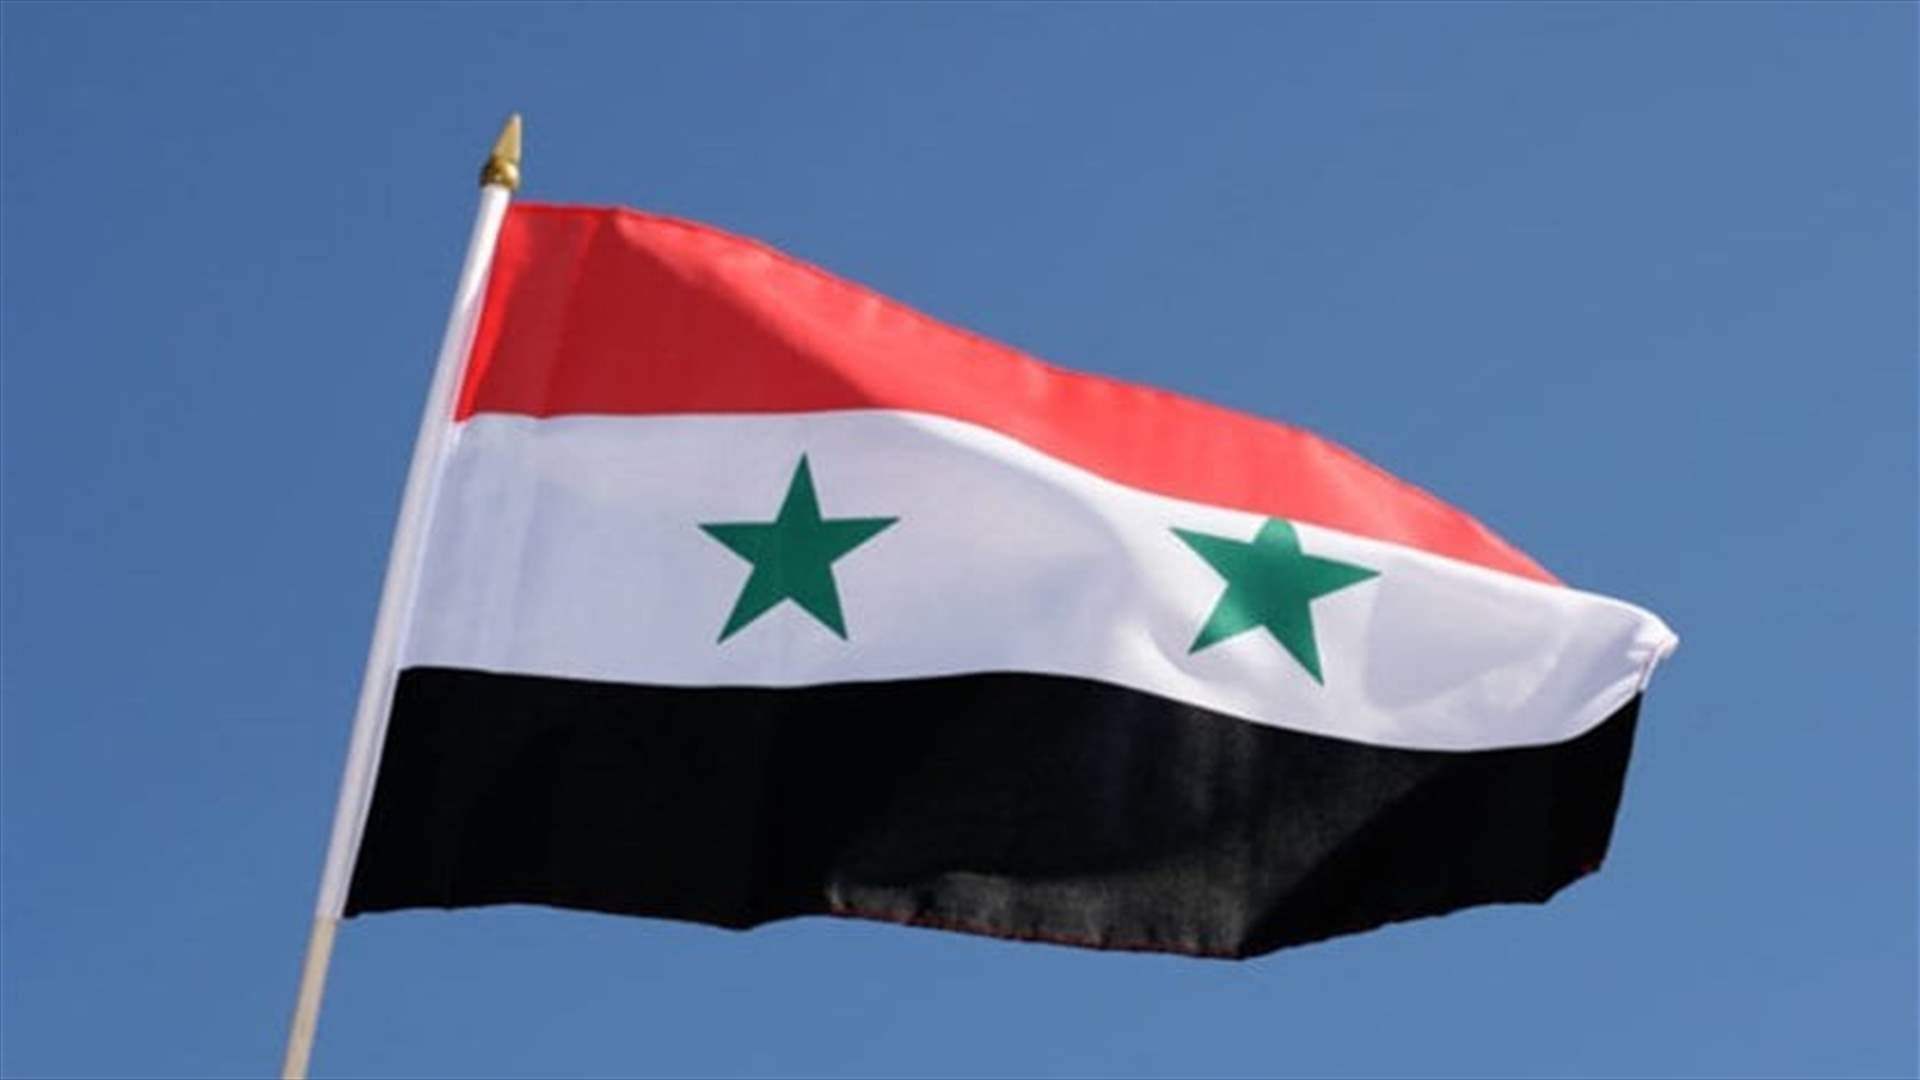 وزارة الثقافة السورية تدين الضربات الأميركية قرب موقع أثري شرق البلاد